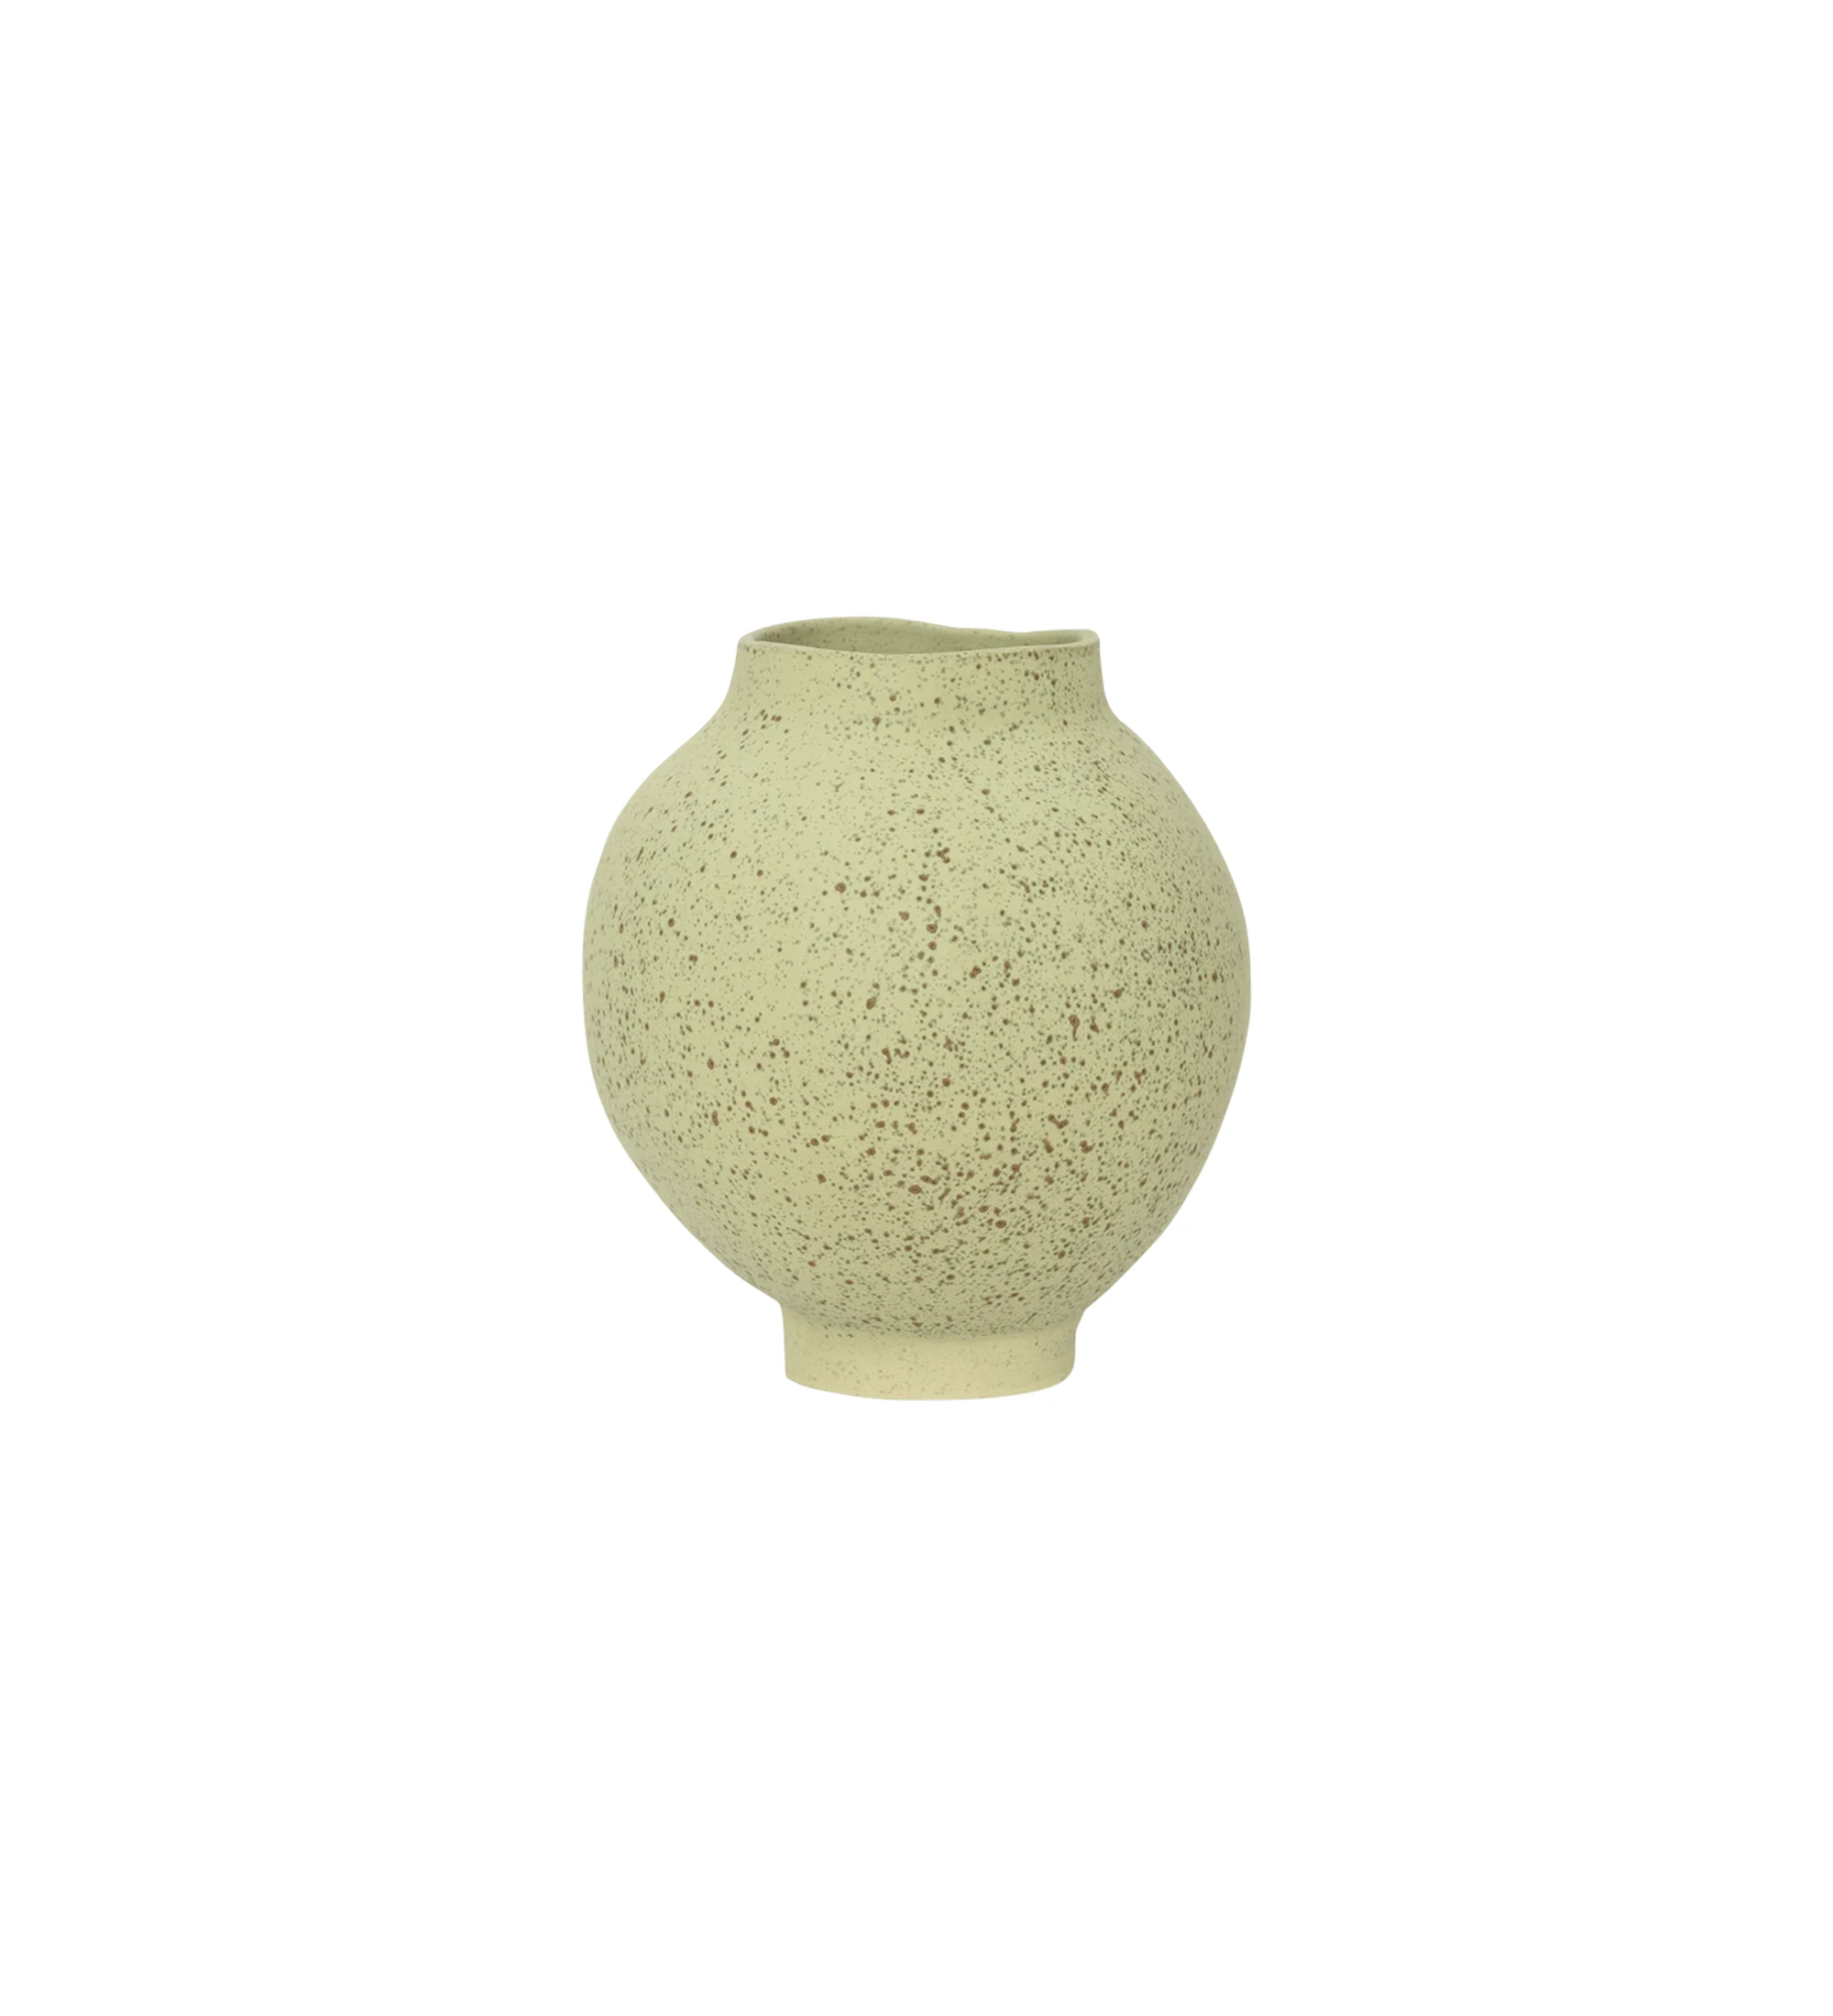 Vase fait main avec structure en céramique, a une finition sèche ultra-mate avec des taches vertes blondes raffinées.